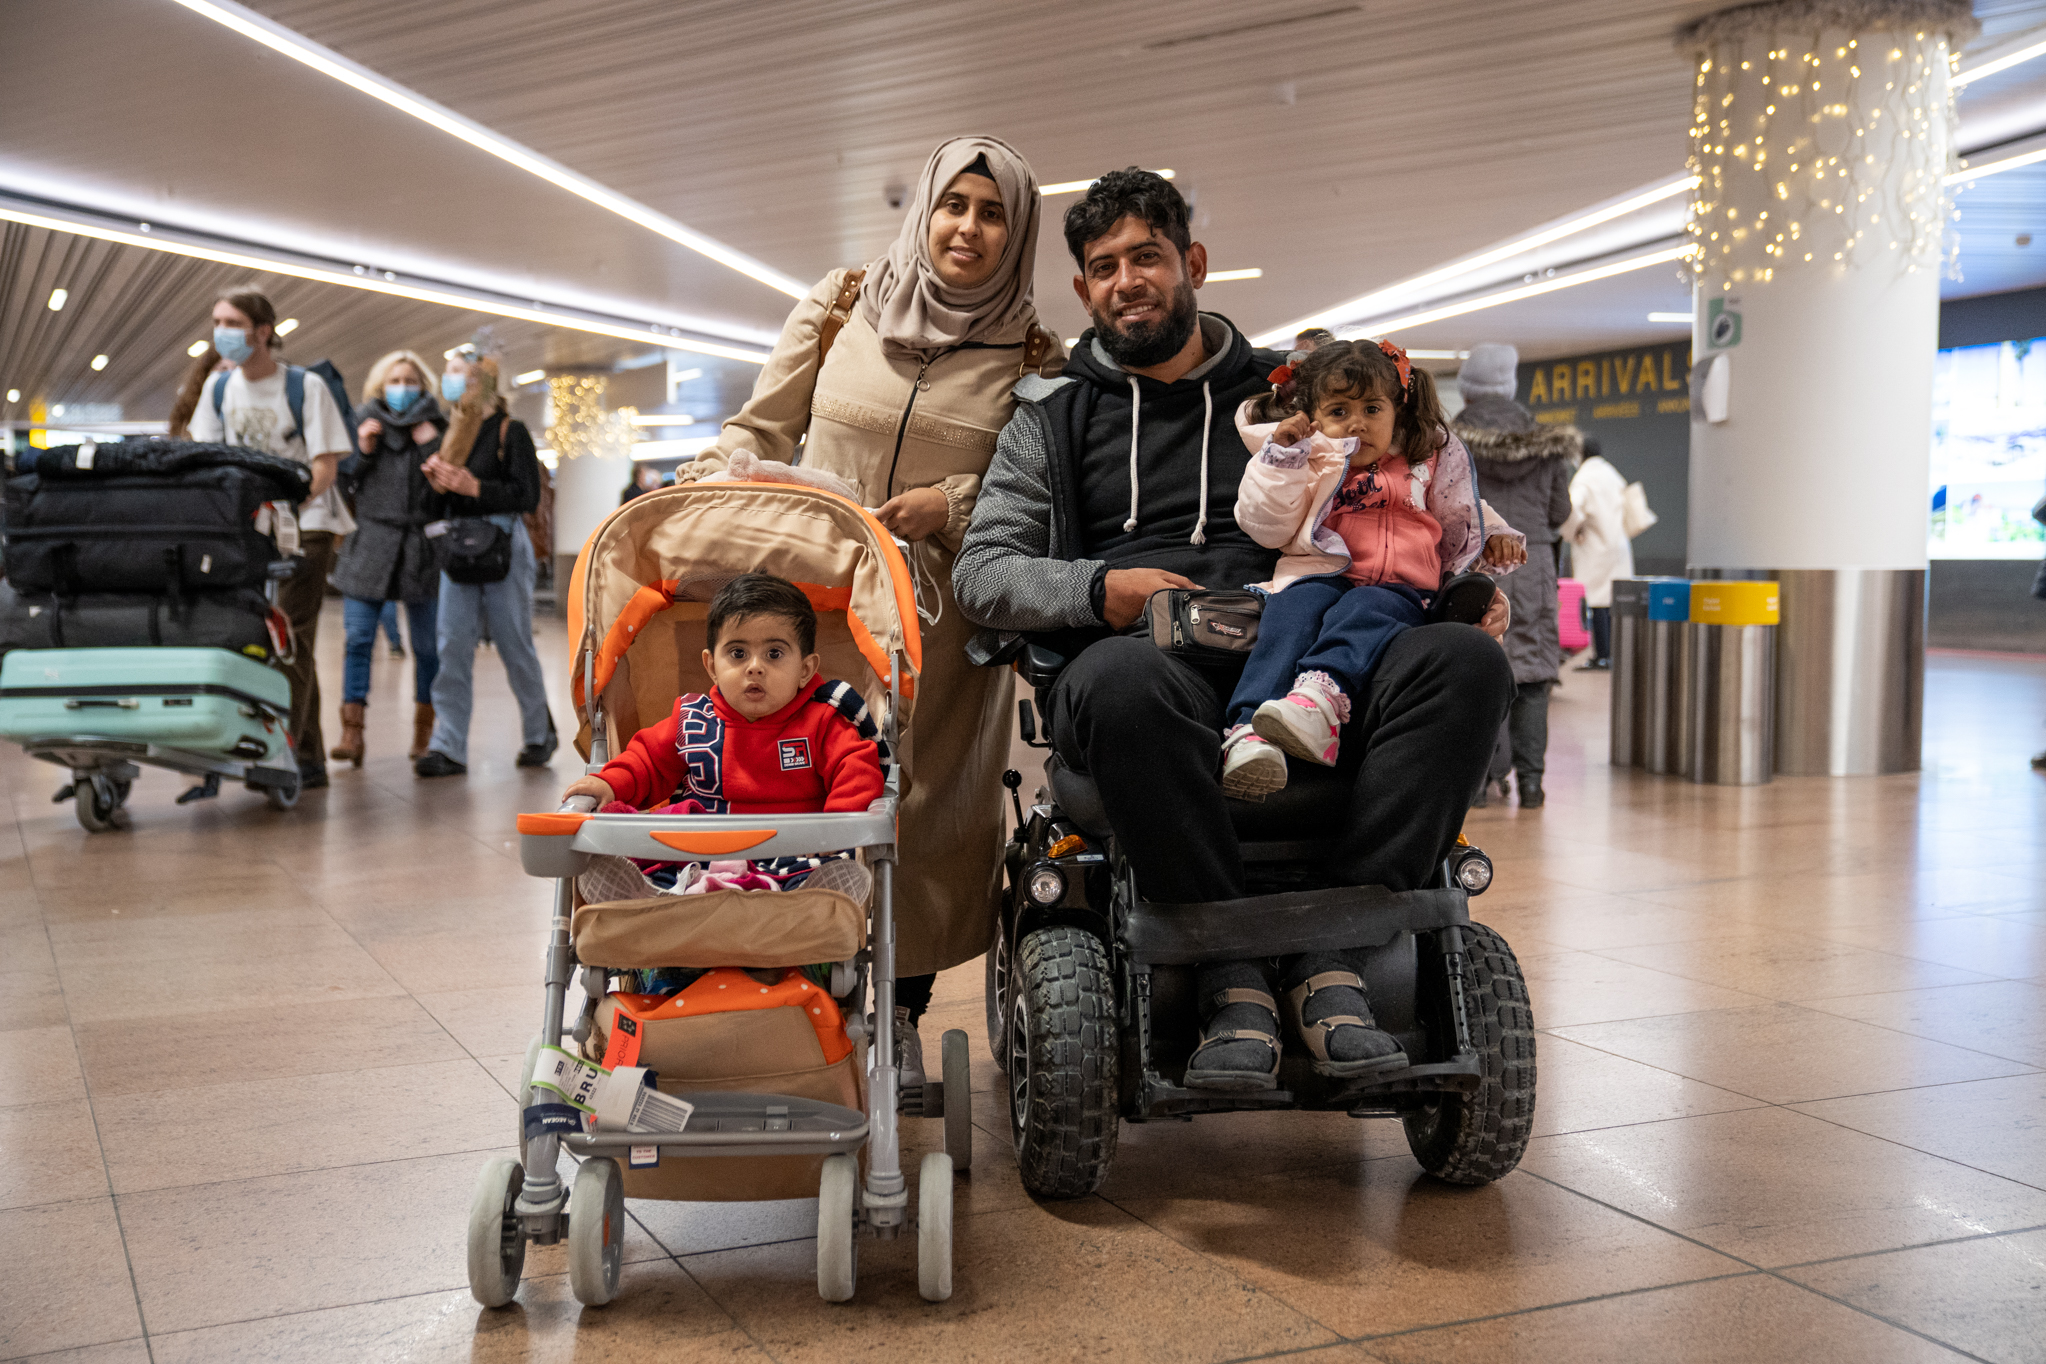 Van uitzichtloos vluchtelingenkamp naar nieuw begin in België: ‘We zijn hier zo warm onthaald’